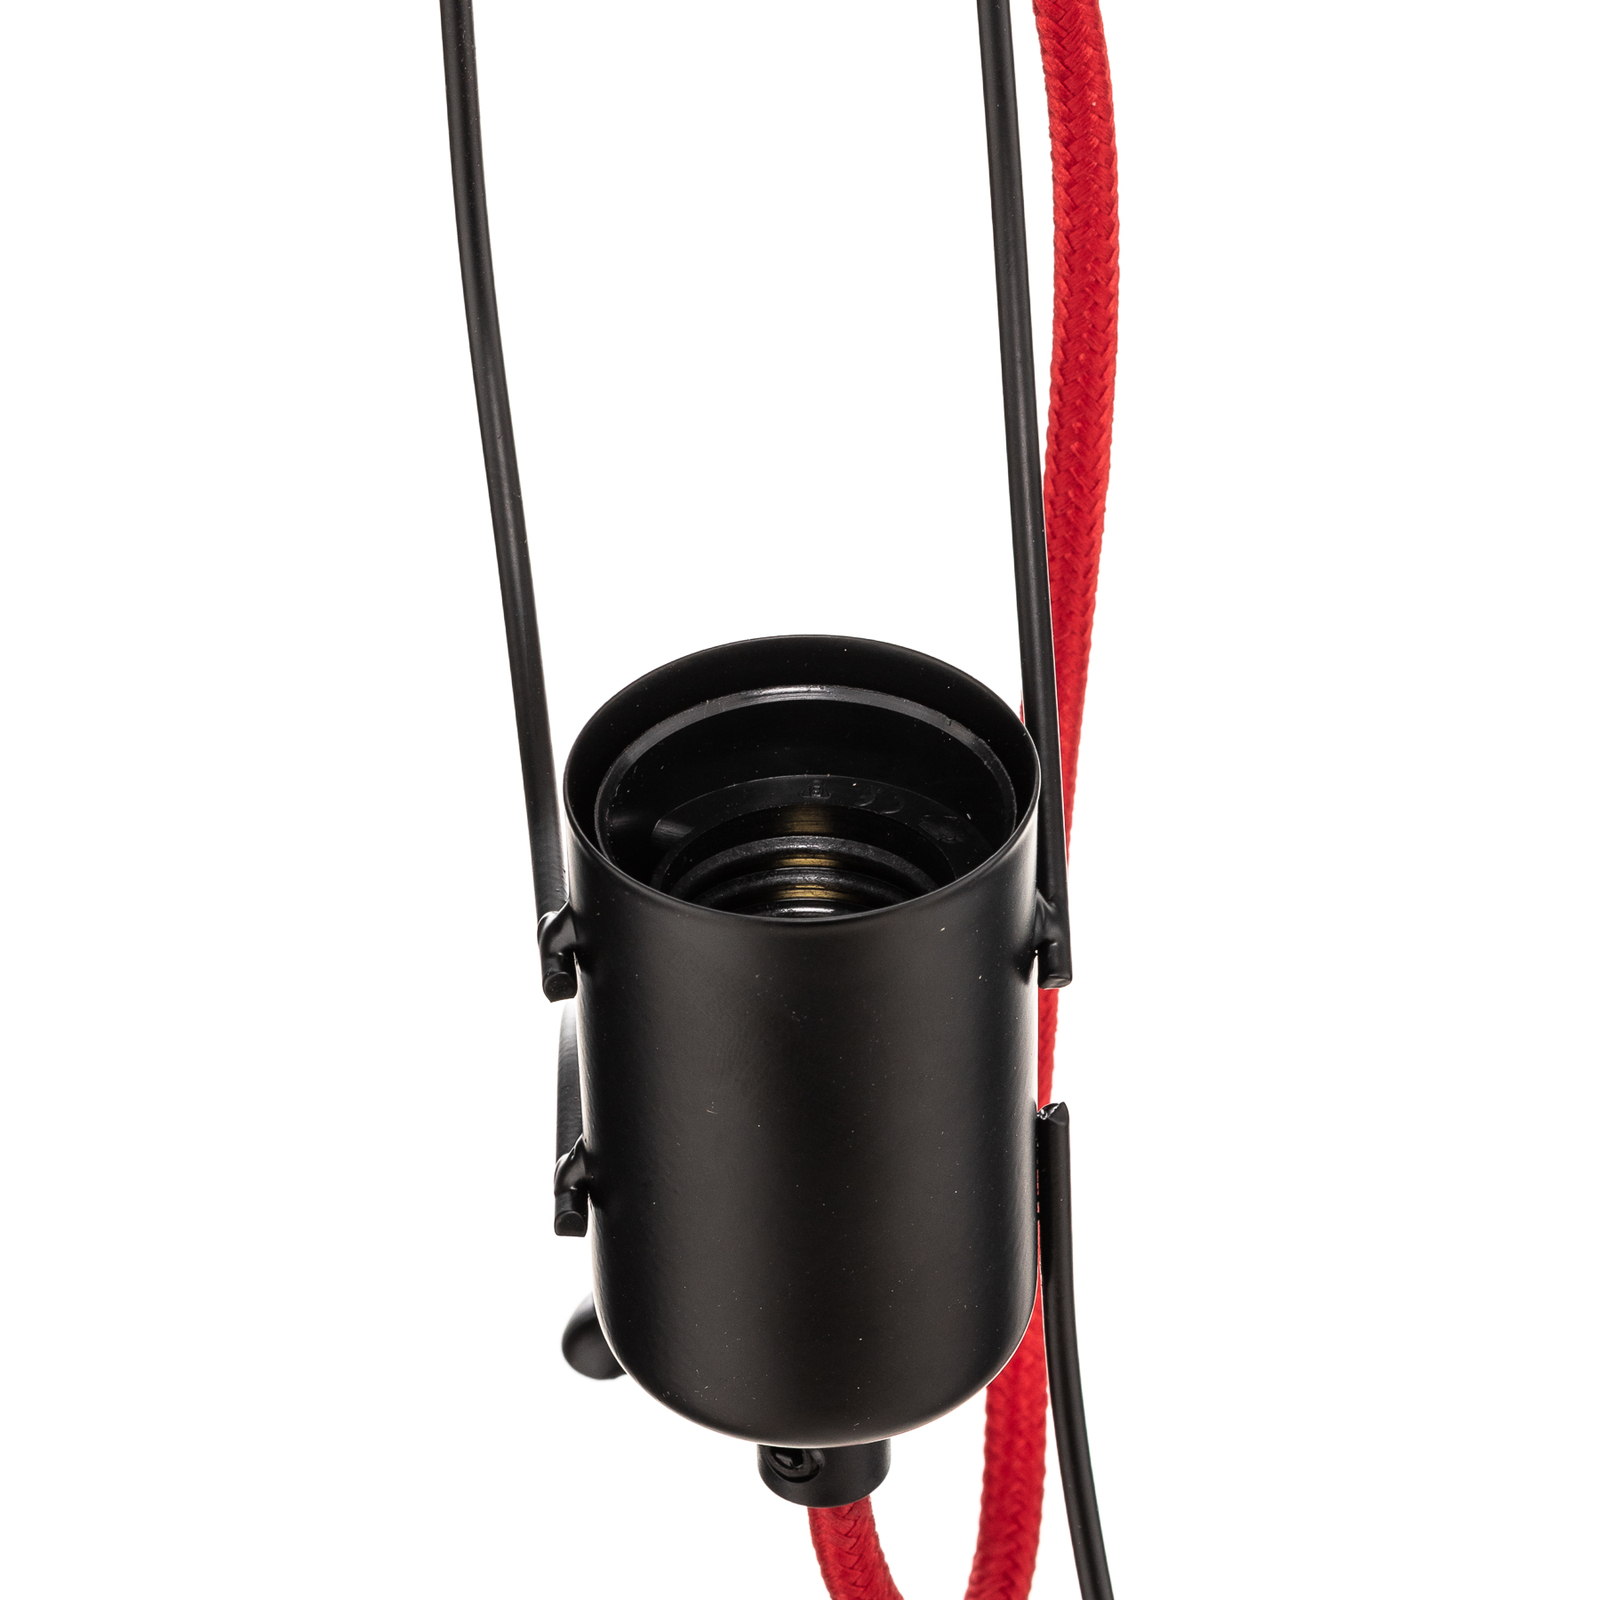 Hanglamp Bobi 3 in zwart, kabel rood, 3-lamps